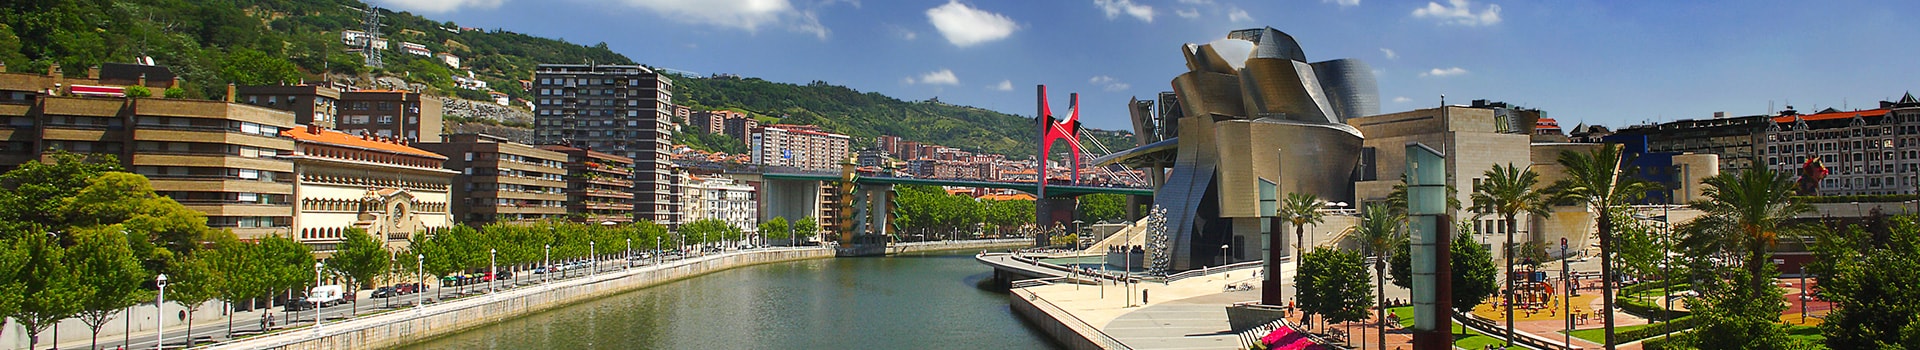 Berlin - Bilbao